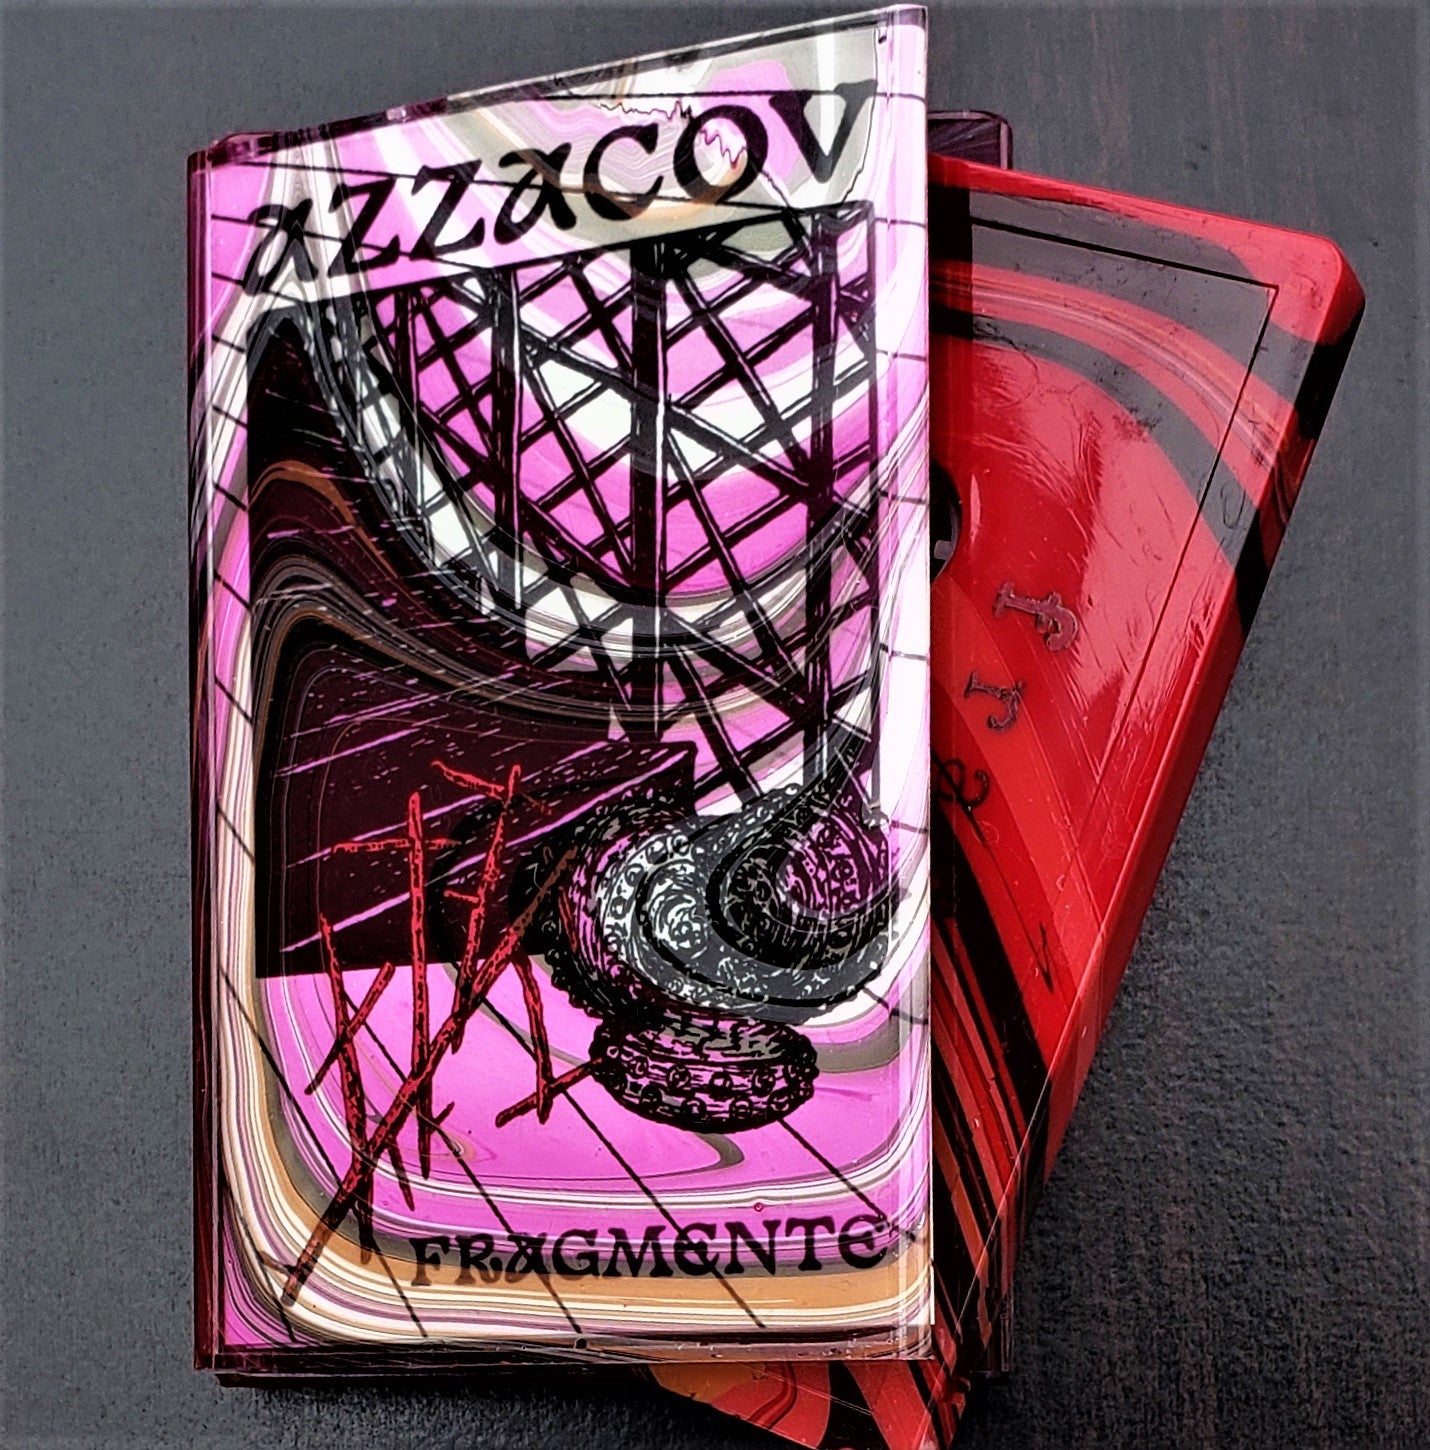 AZZACOV - fragmente (cassette)